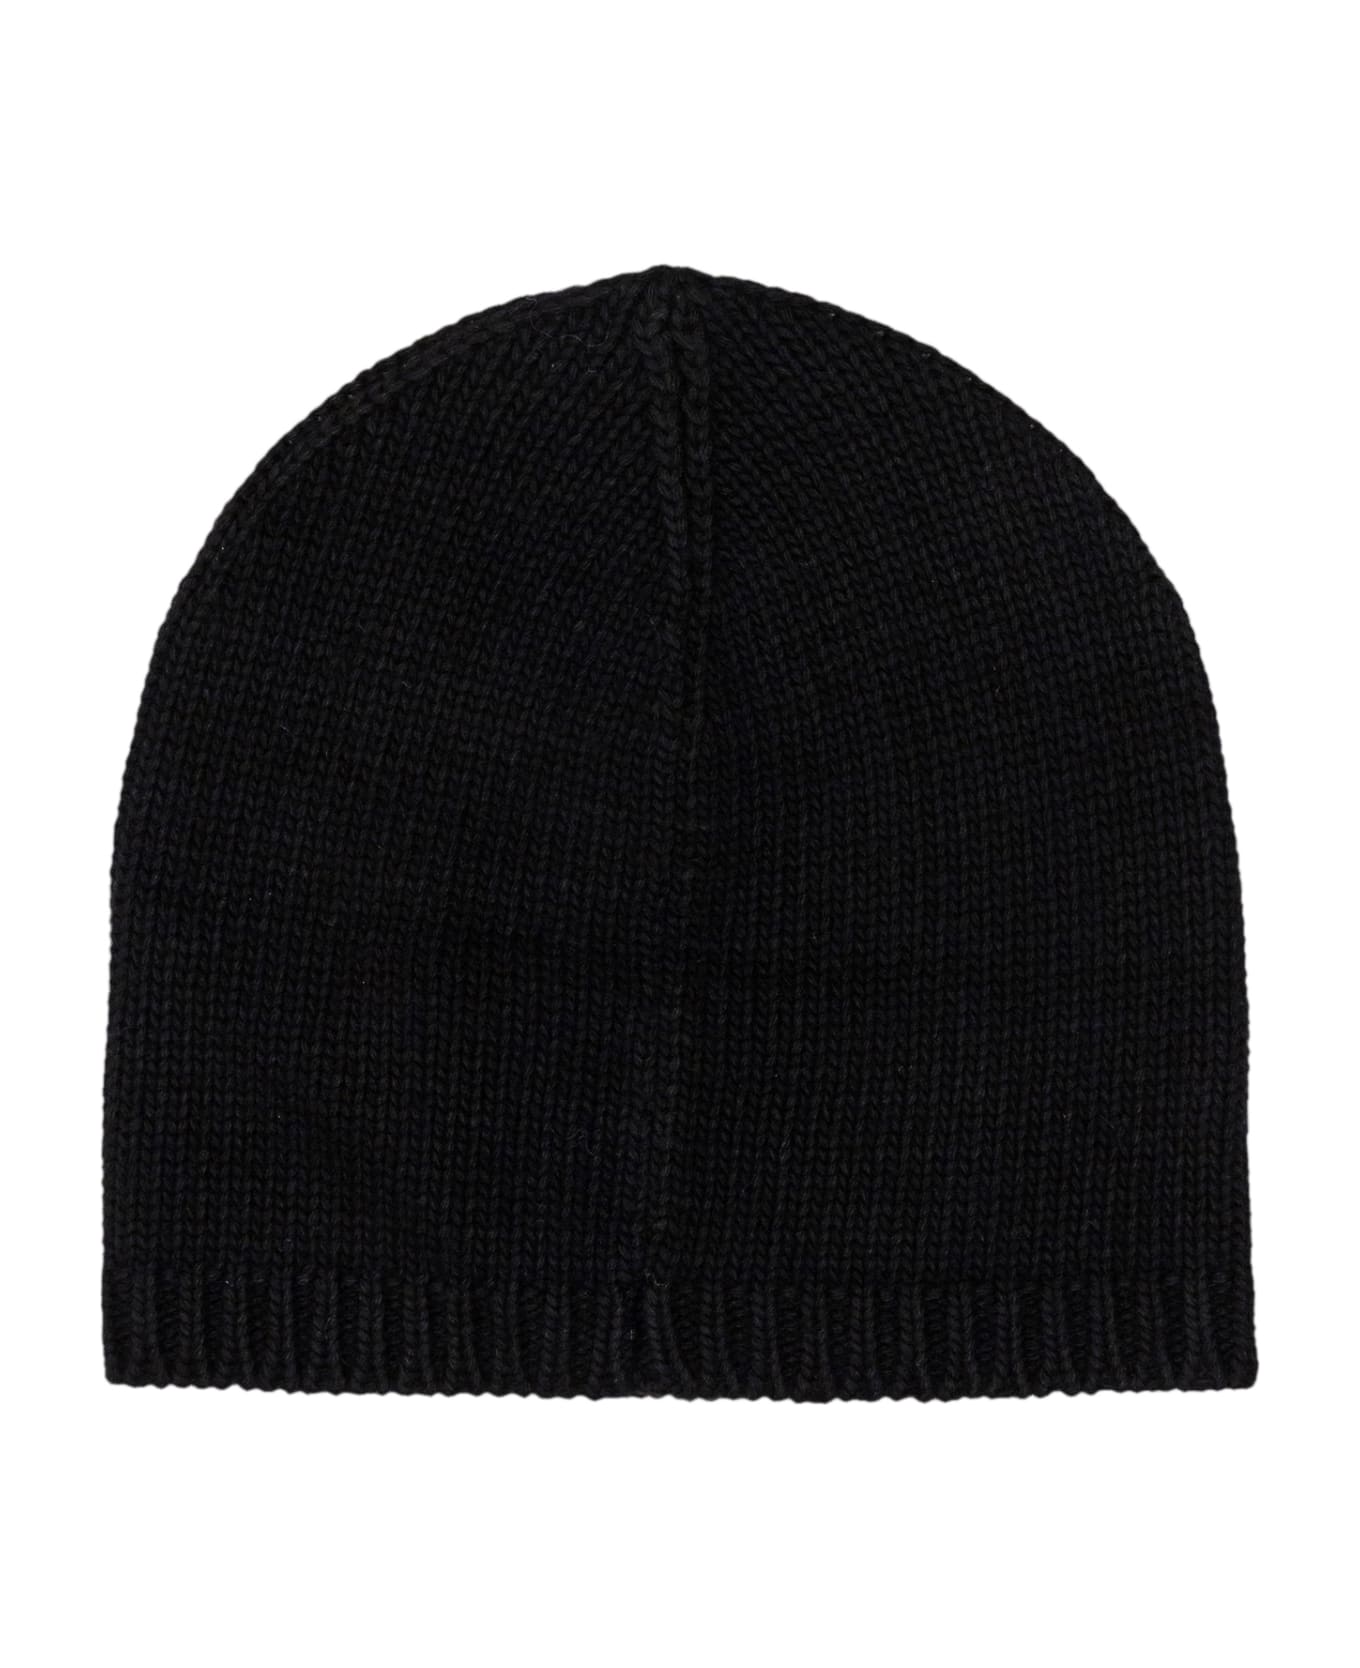 Dsquared2 Black Wool Blend Beanie - NERO BIANCO 帽子